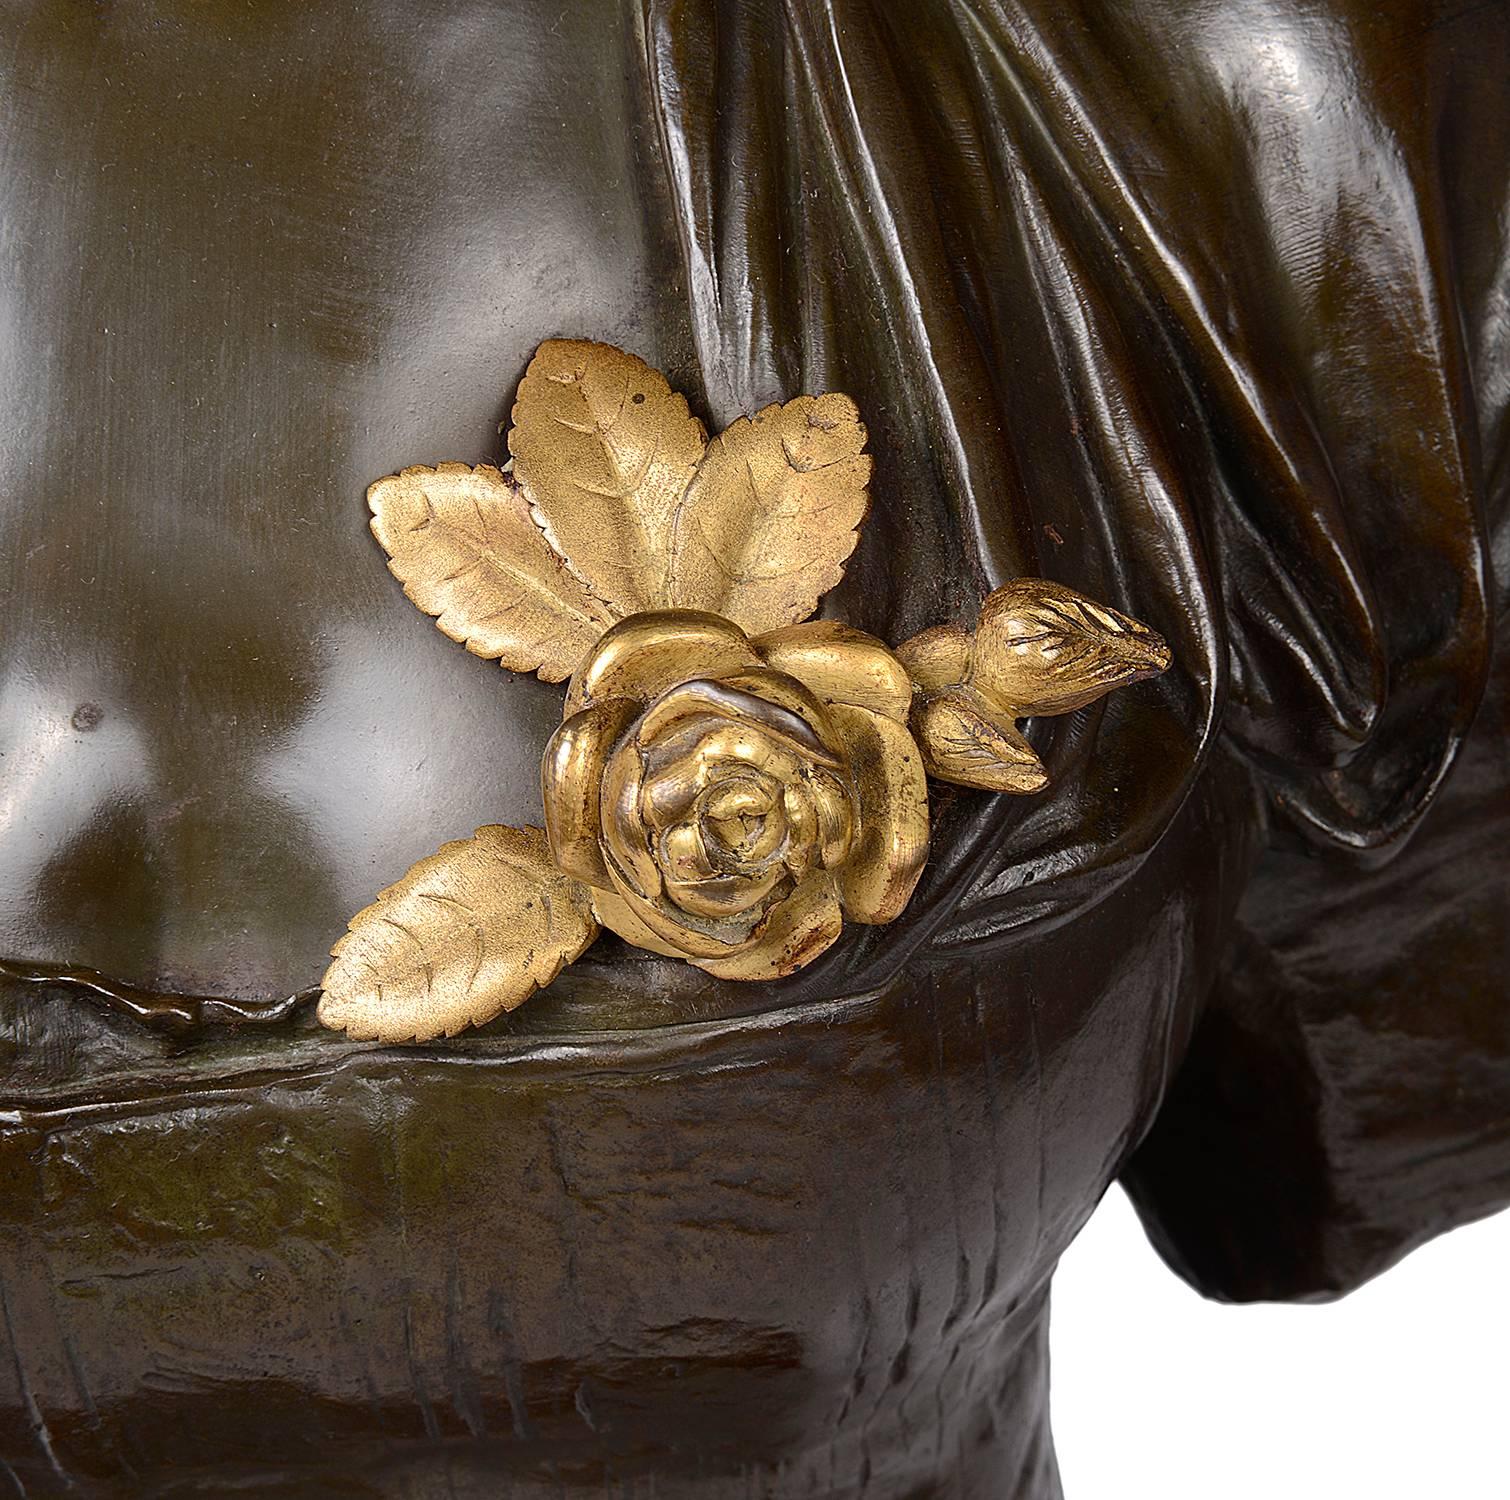 Buste en bronze de très bonne qualité, datant du XIXe siècle, représentant une jolie jeune fille coiffée d'un bonnet, avec une fleur dorée, monté sur un socle en marbre rouge avec des moulures en bronze doré.
Signé EUGENE LAURENT (1832-1898).